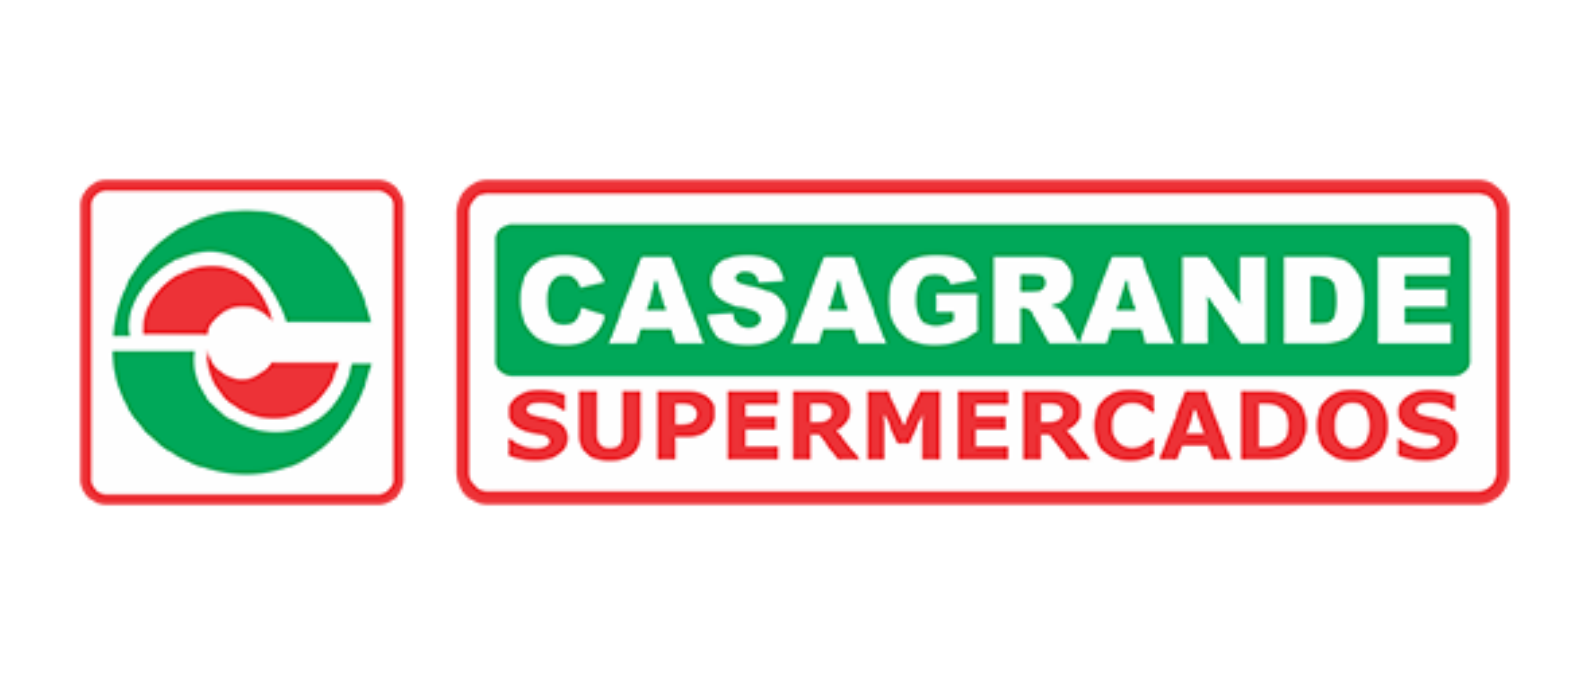 Supermercados Casagrande